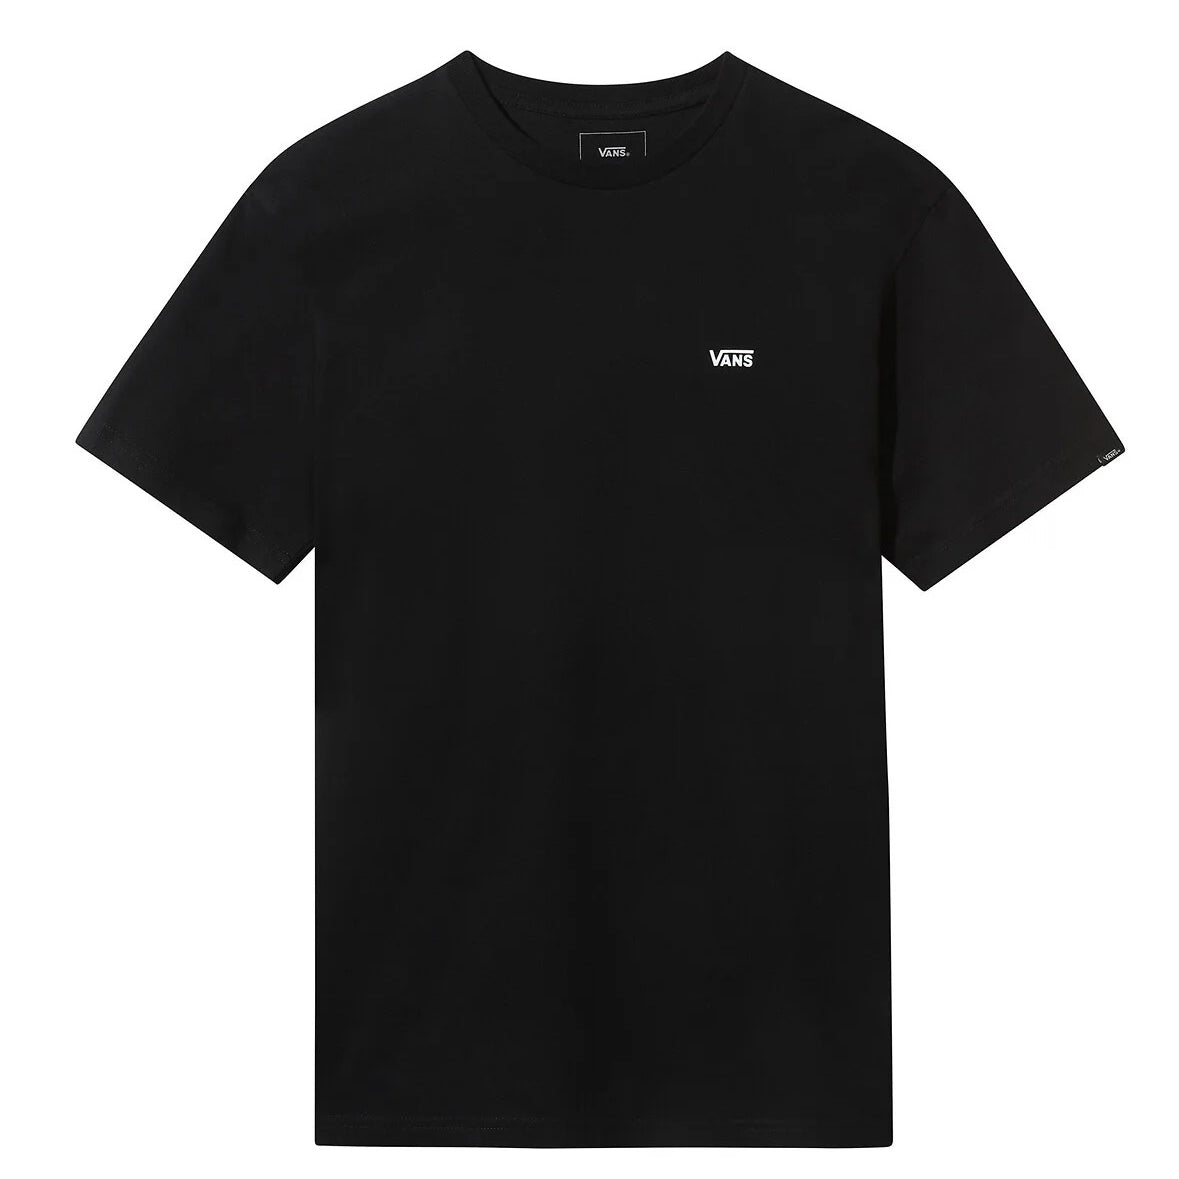 T-shirt Uomo